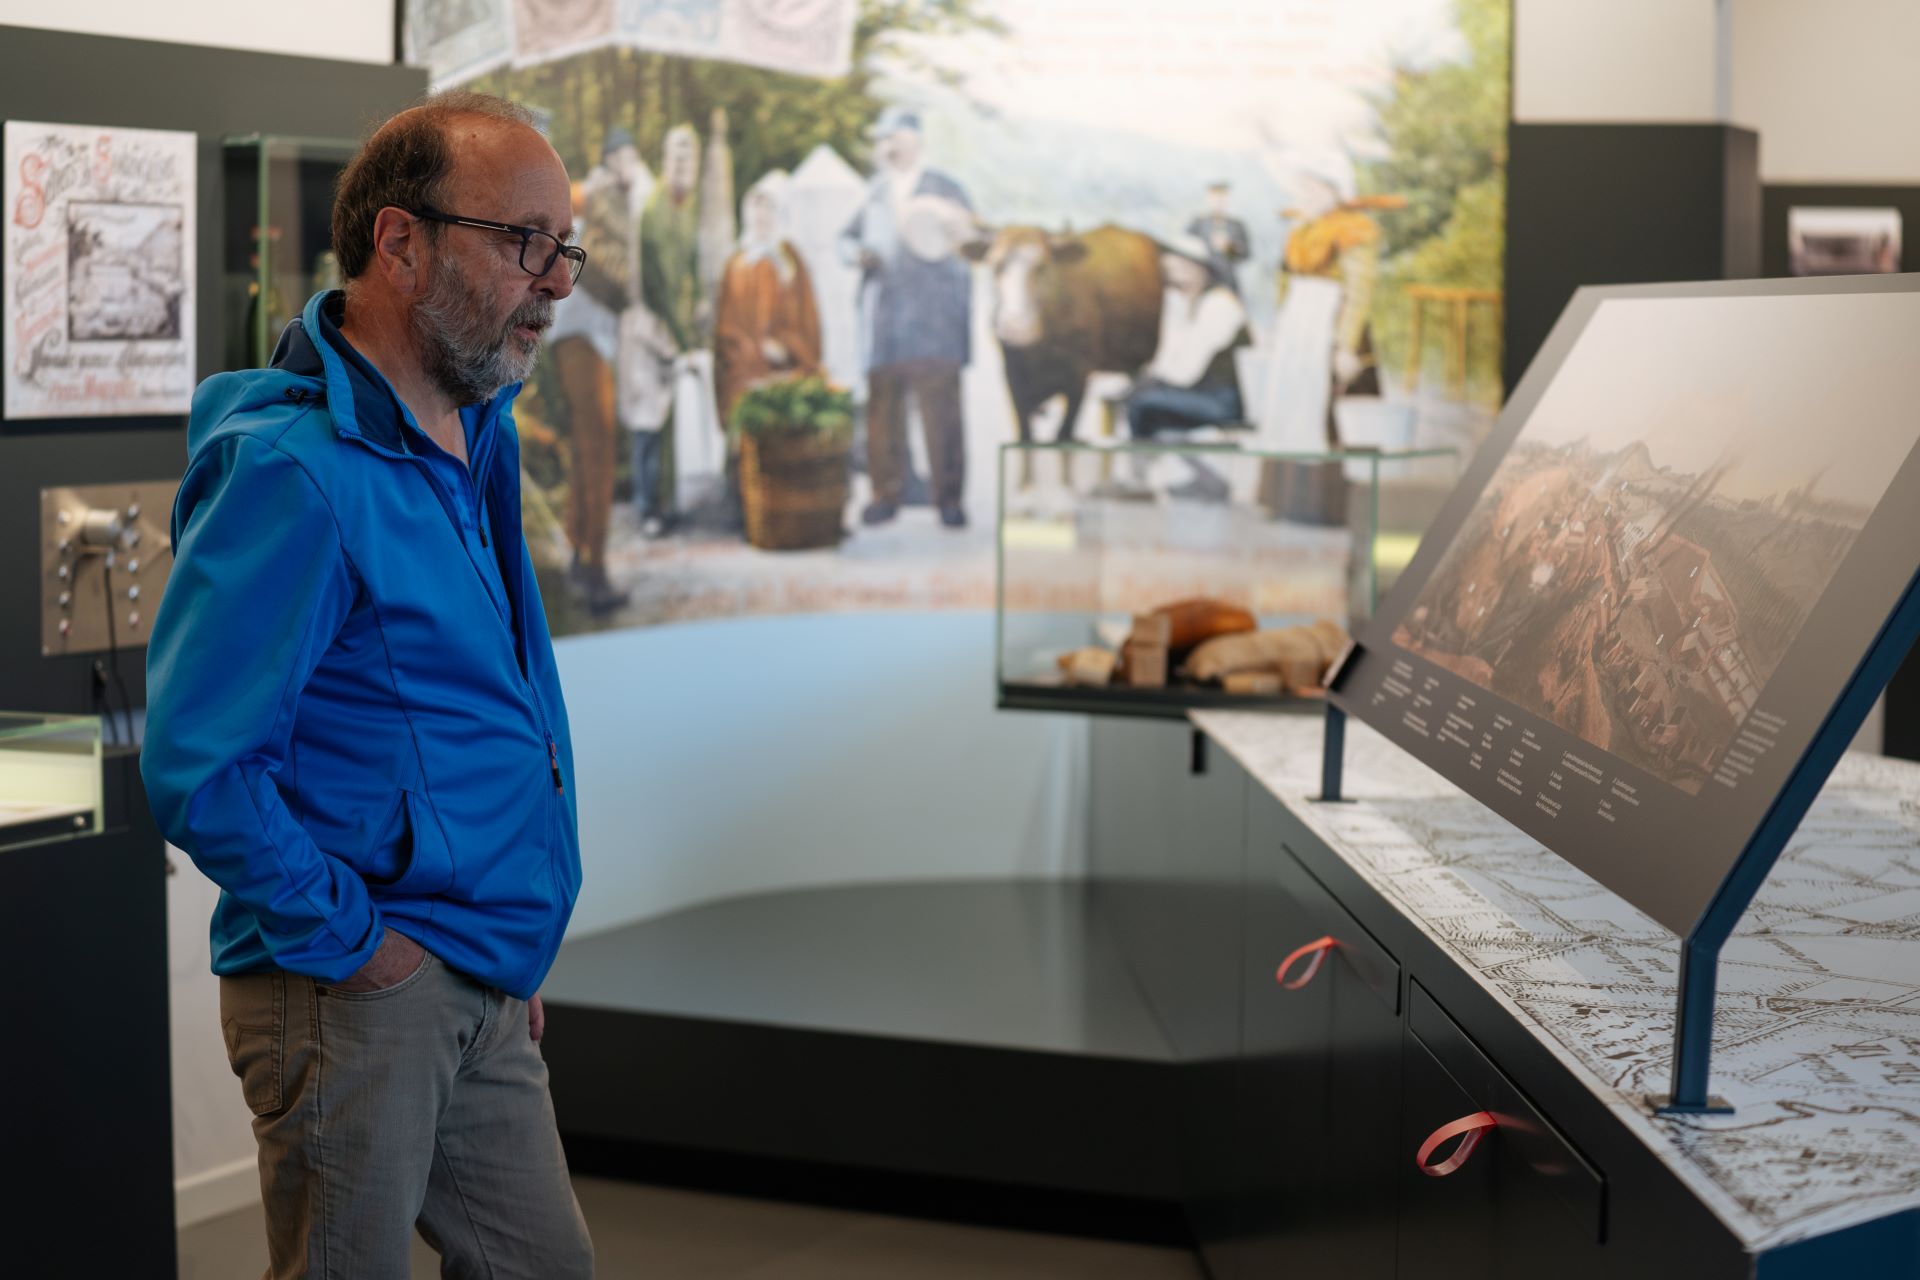 Ein Mann betrachtet eine Ausstellung im Museum. Er steht in einer blauen Jacke und einer grauen Hose und hat die Hände in den Taschen.